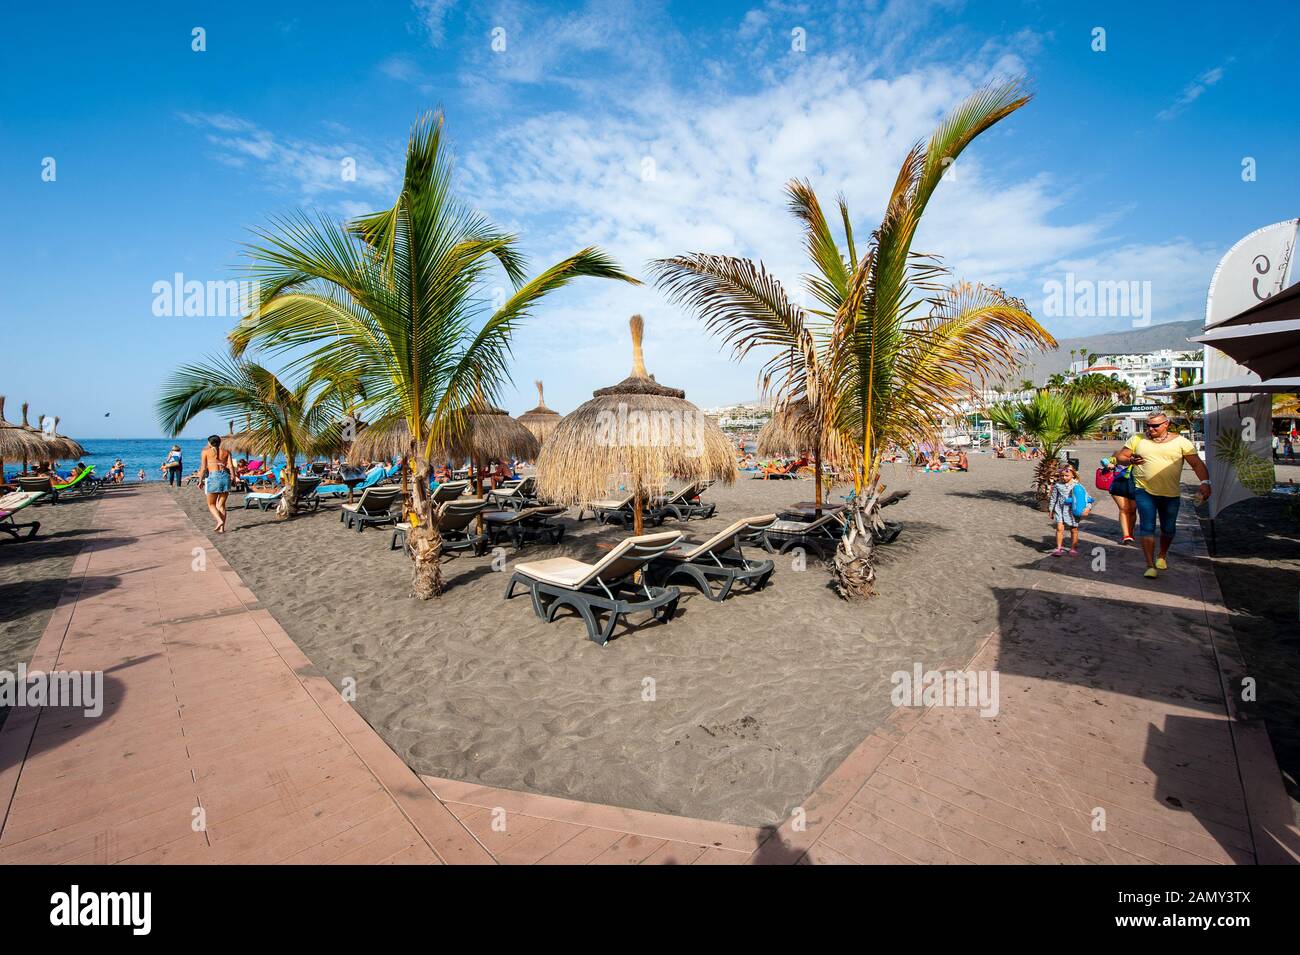 Île des Canaries TENERIFE, ESPAGNE - 26 DEC, 2019: Les touristes ment et se détendent entre palmiers et chaises longues sur la plage appelée playa de torviscas. Banque D'Images